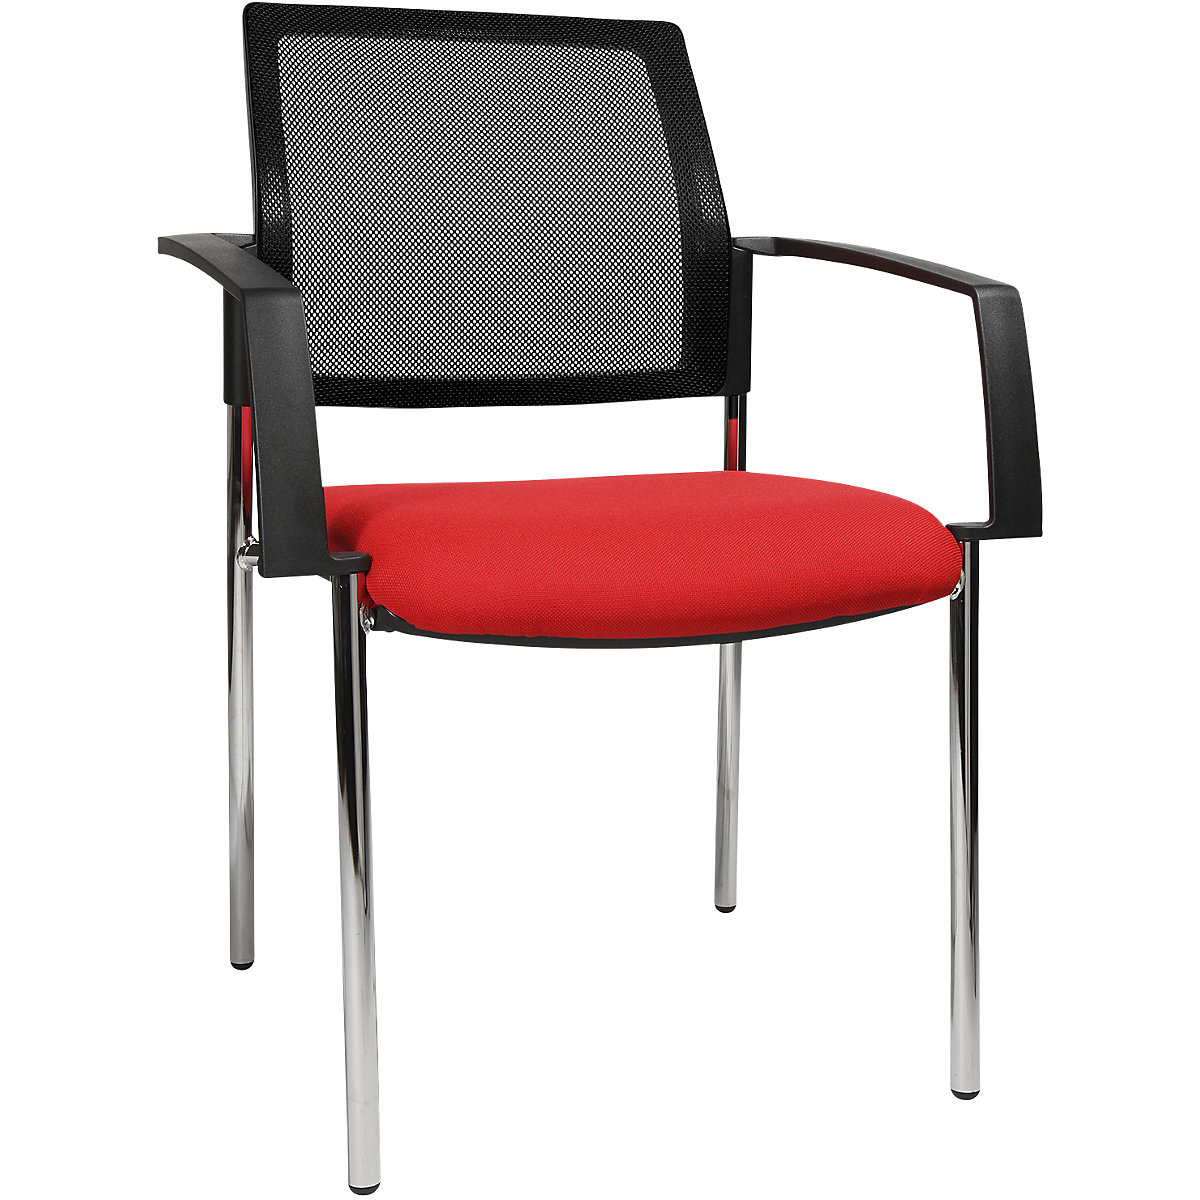 Stohovacia stolička zo sieťoviny – Topstar, so 4 nohami, OJ 2 ks, sedadlo červená, podstavec chrómový-6